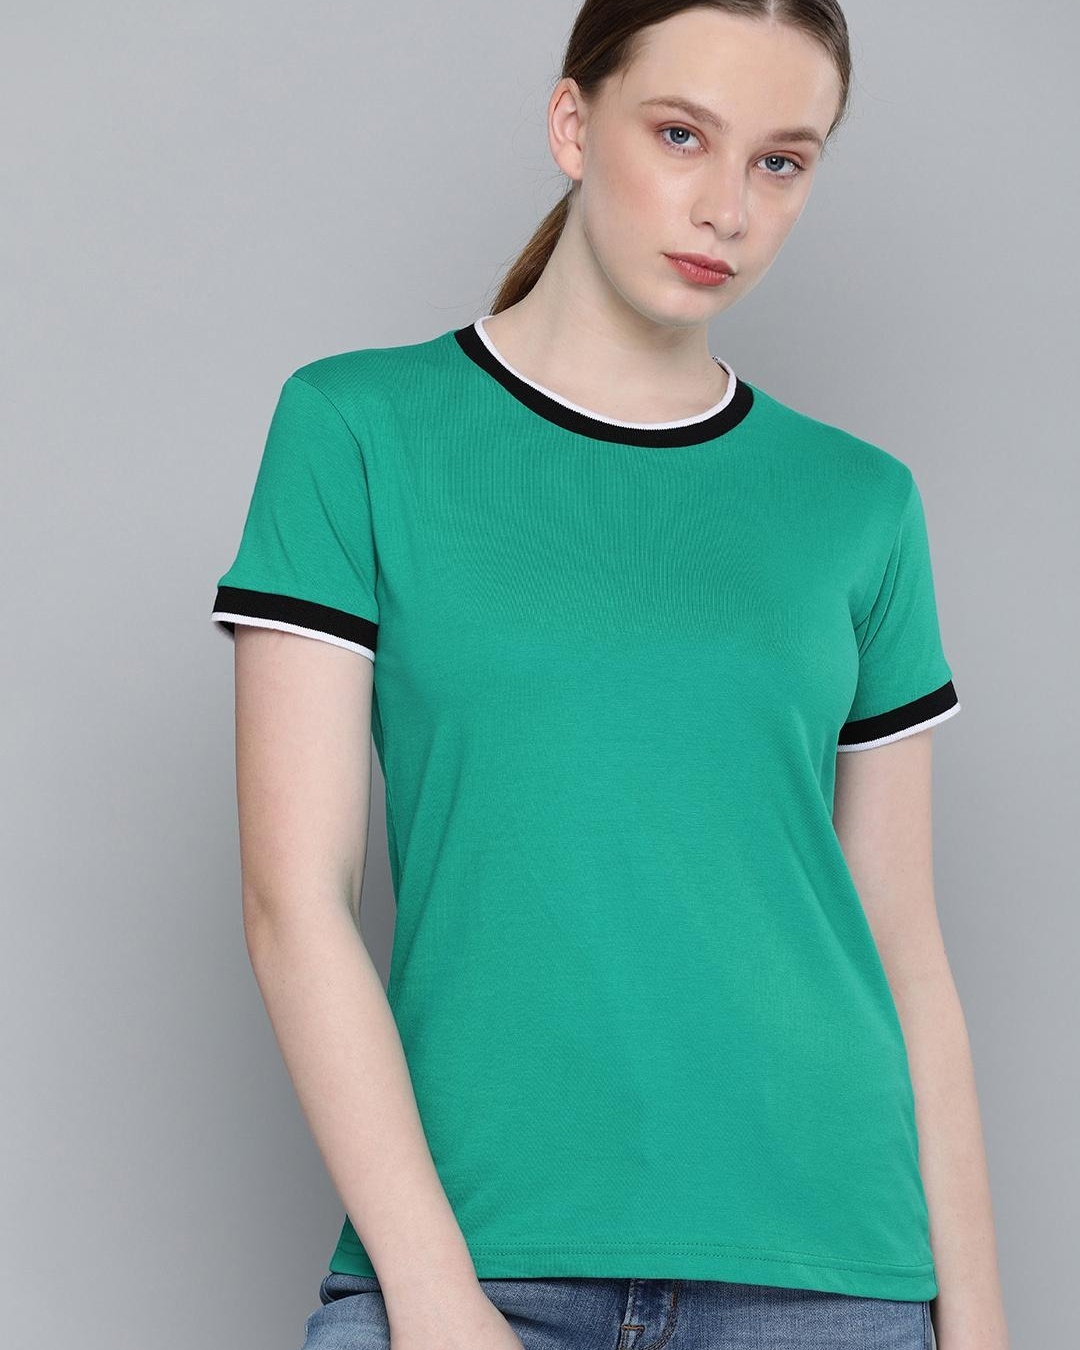 Buy Women's Green T-shirt for Women Green Online at Bewakoof